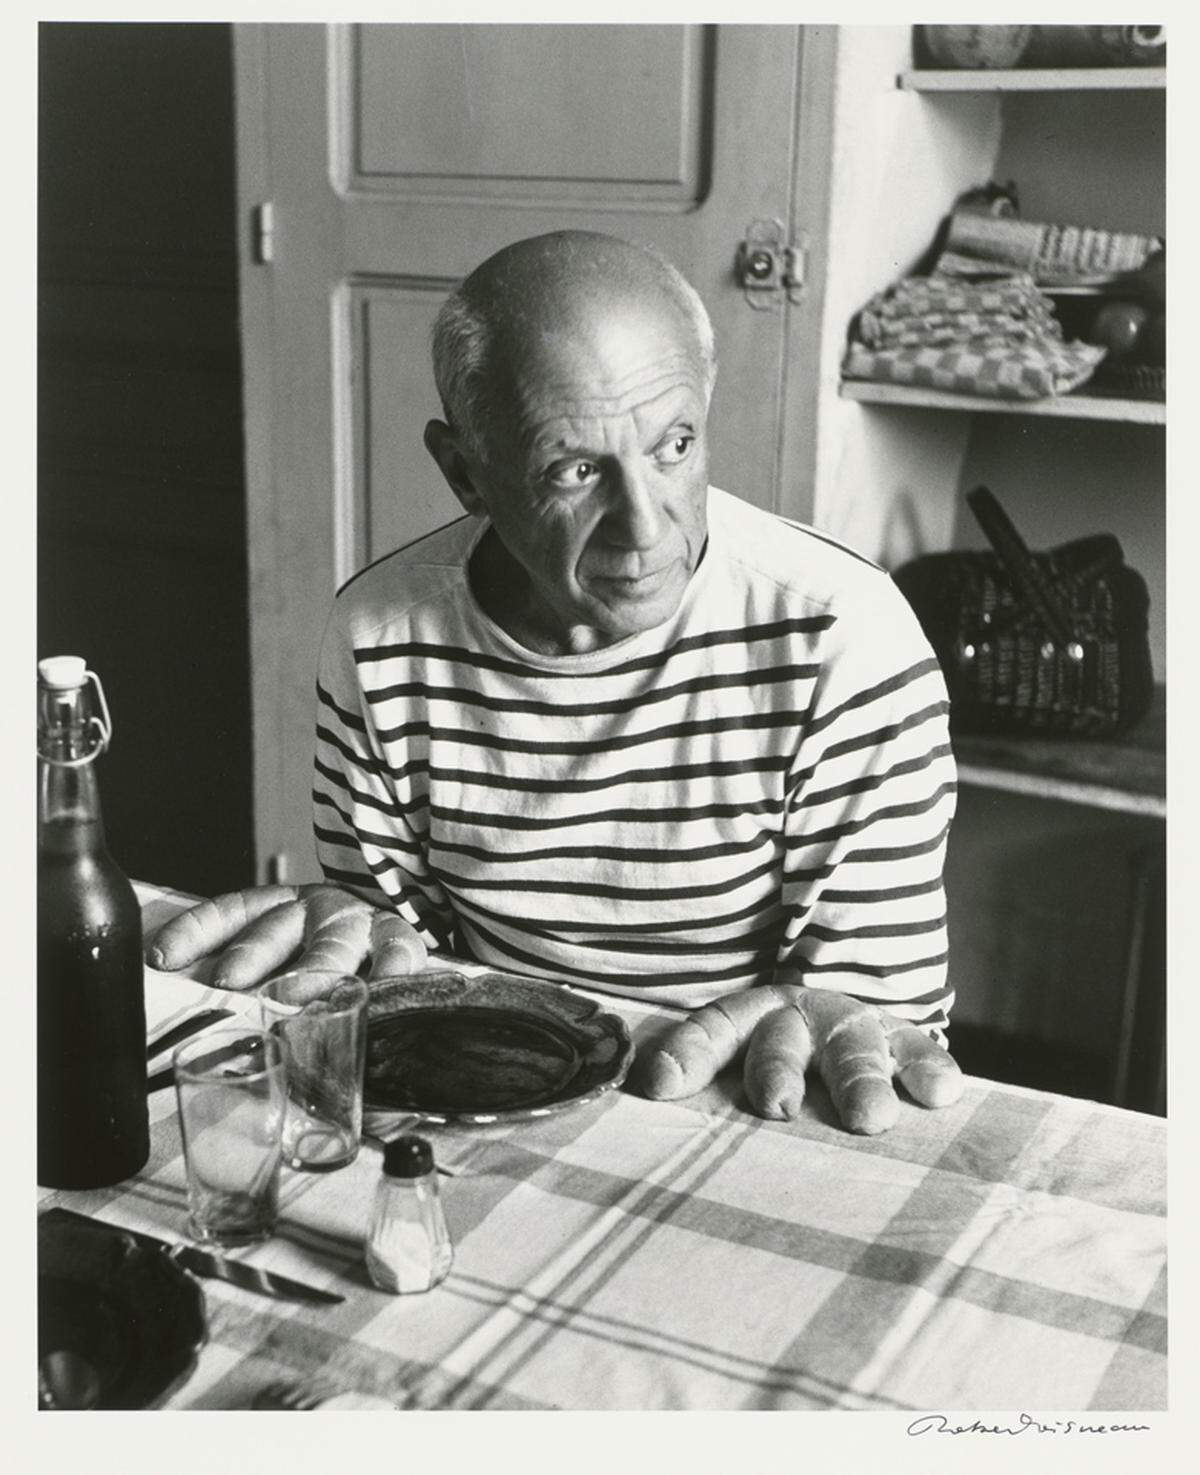 Viele der ausgestellten Porträts sind Schwarzweiß-Fotografien. Robert Doisenau setzte 1952 einen der weltweit bekanntesten Künstler in Szene, den Kubisten Pablo Picasso. Das Bild trägt den Titel "Les Pains de Picasso" ("Die Brote von Picasso").